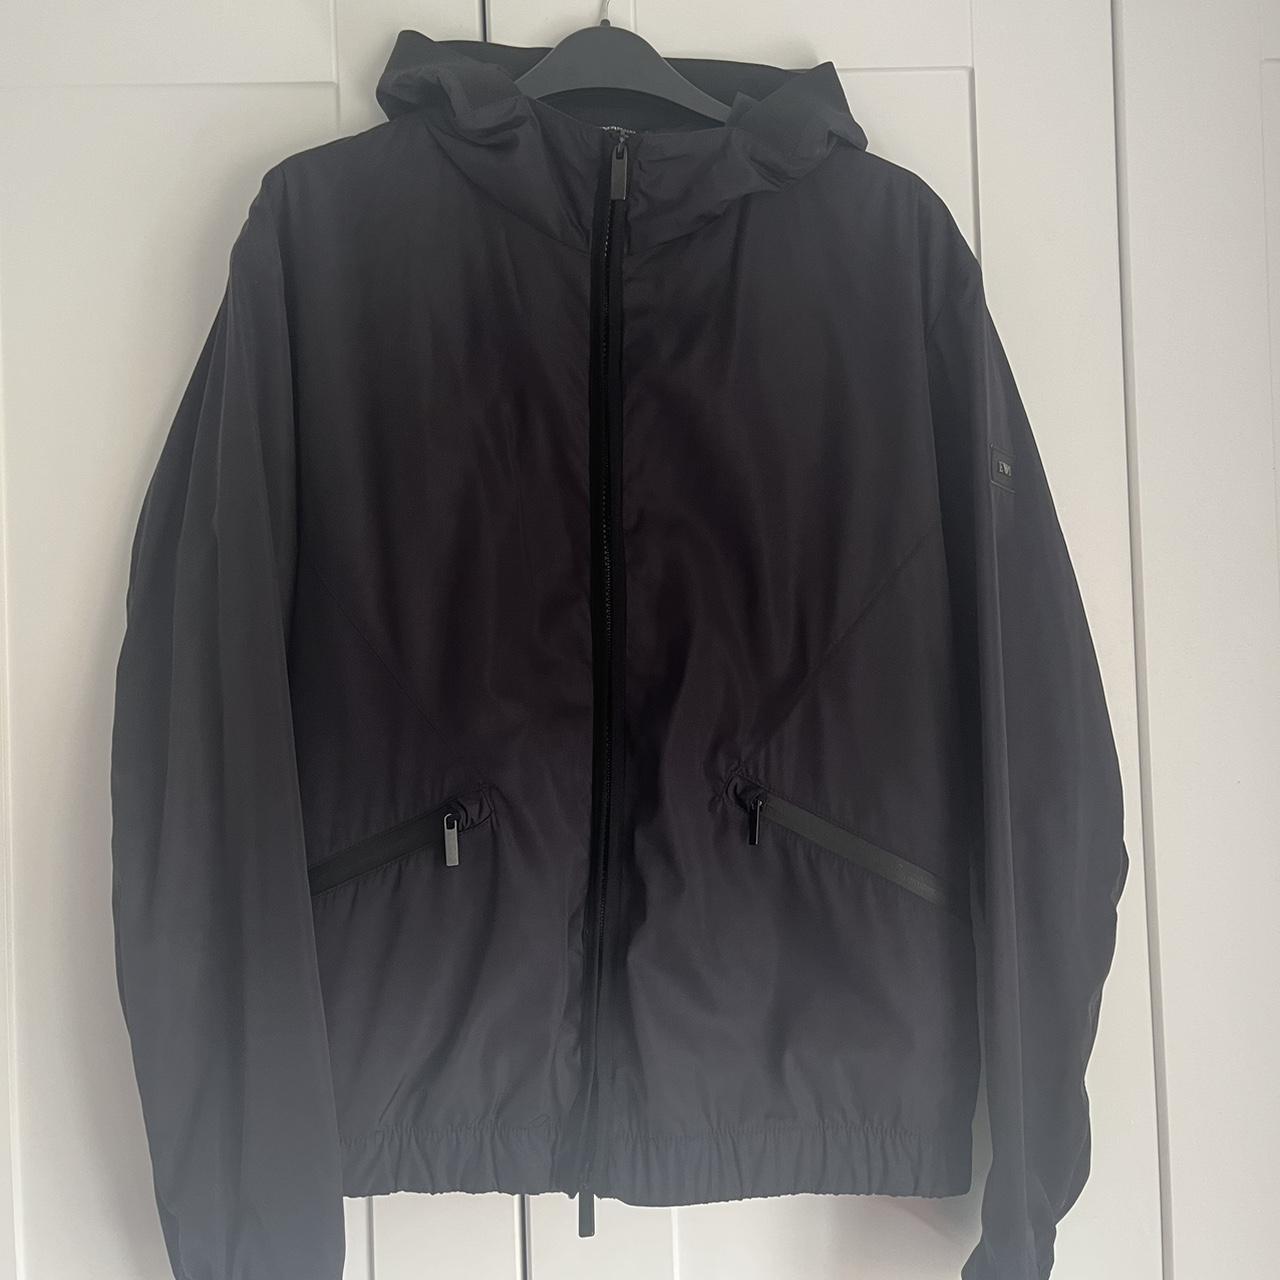 Emporio Armani jacket (nylon) size S Size EU48... - Depop